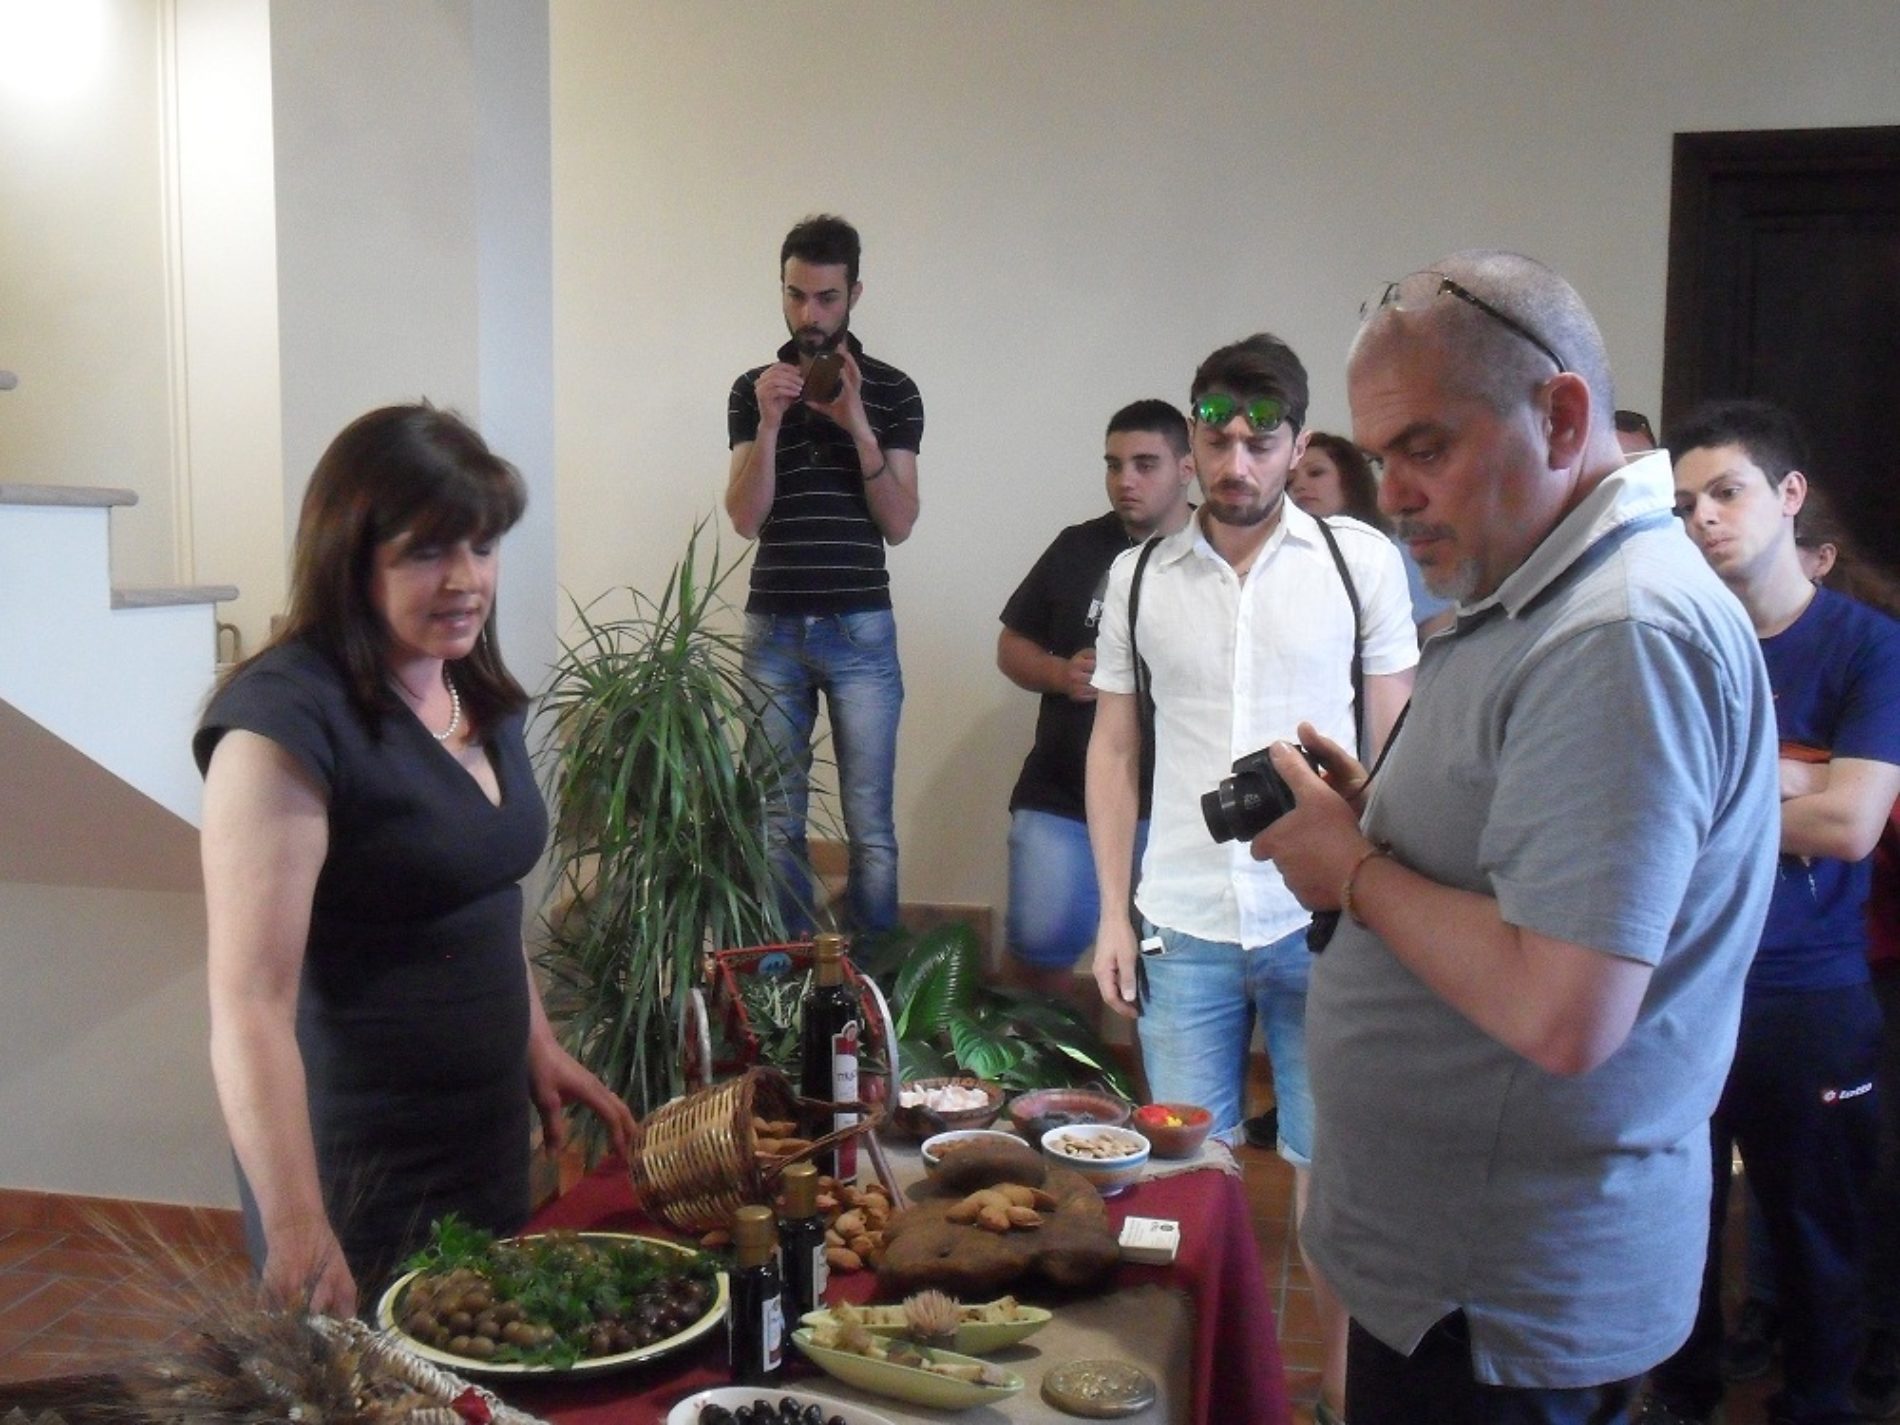 L’antropologo alimentare Sergio Grasso elogia le “eccellenze” di Barrafranca